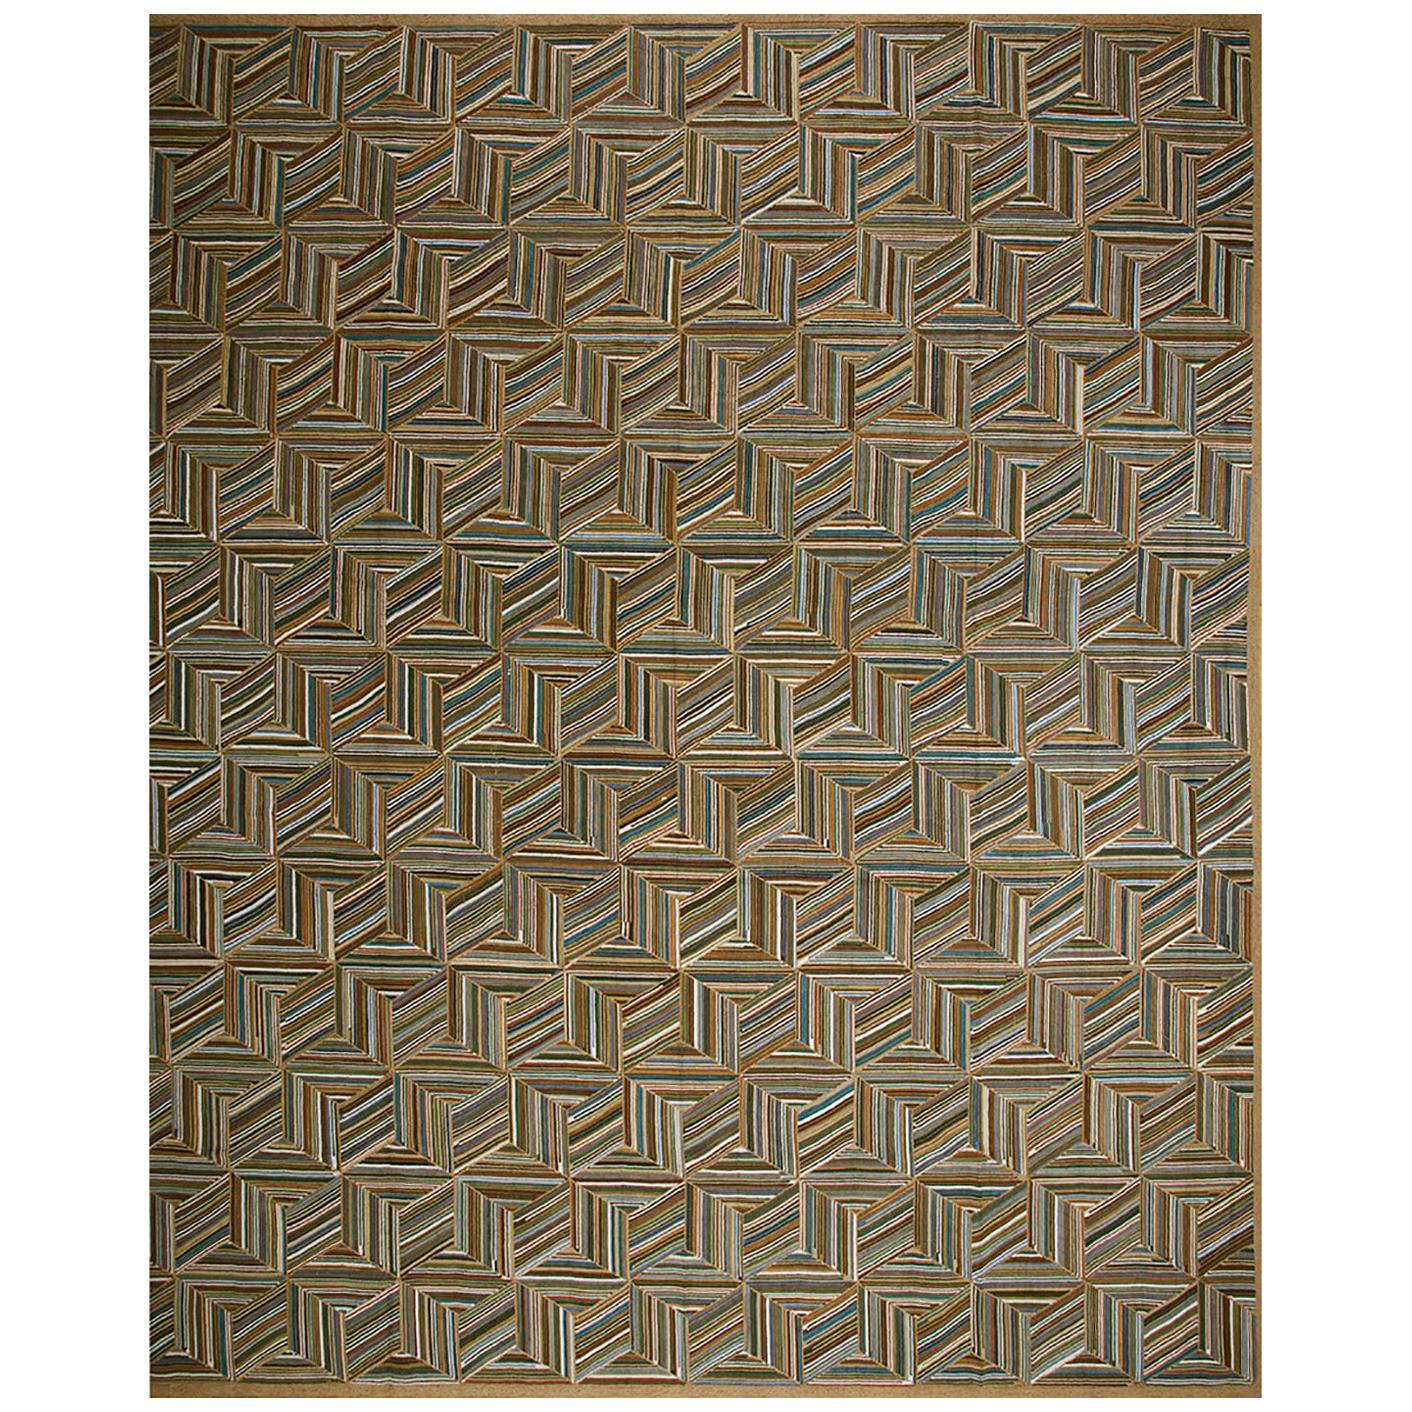 Tapis crocheté AM Contemporary (6' x 9' - 183x 274)